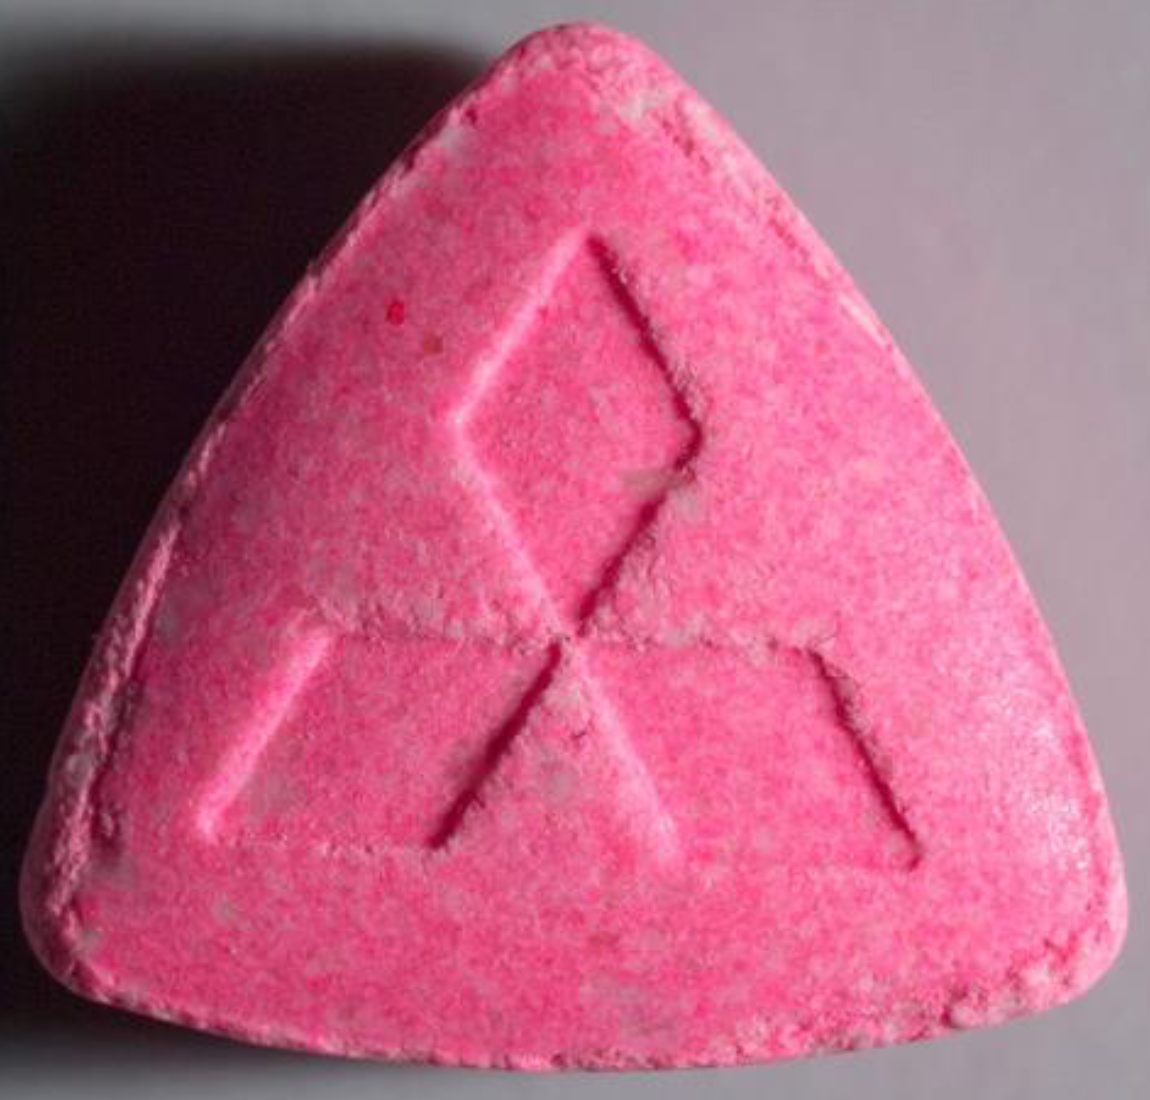 Achtung, hochdosierte XTC-Pille "Mitsubishi" mit 179,1 mg MDMA! -...